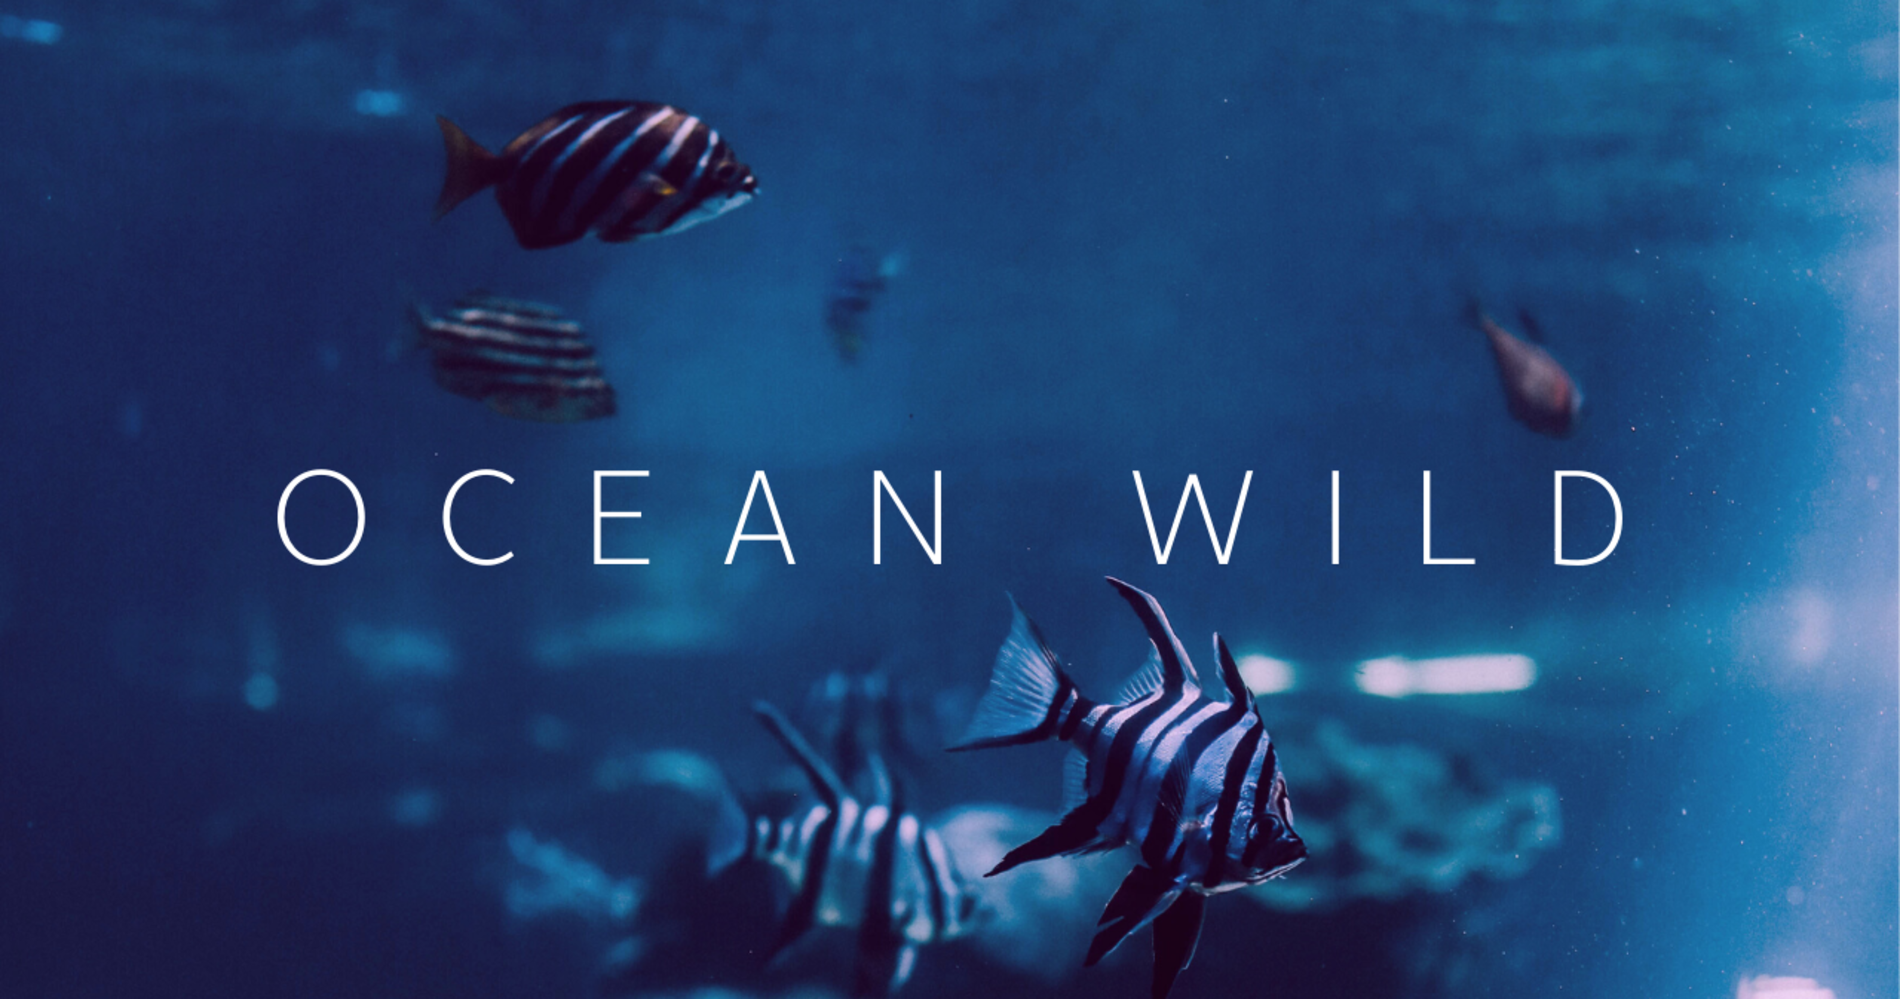 Океан слов. Wild Ocean. Sale Ocean International.